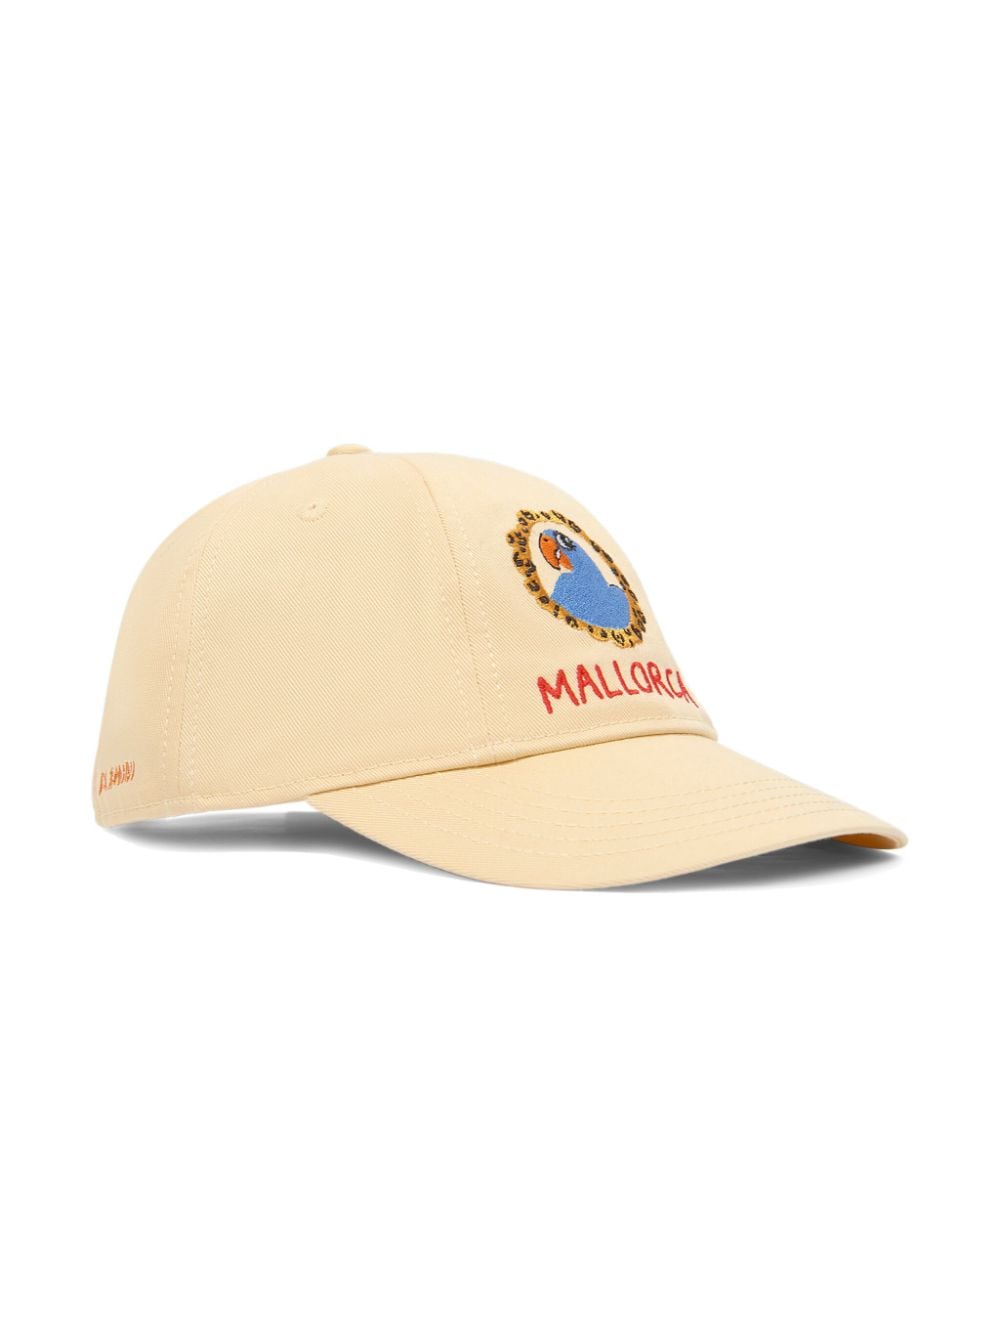 Mini Rodini Mallorca embroidery baseball cap - Yellow von Mini Rodini